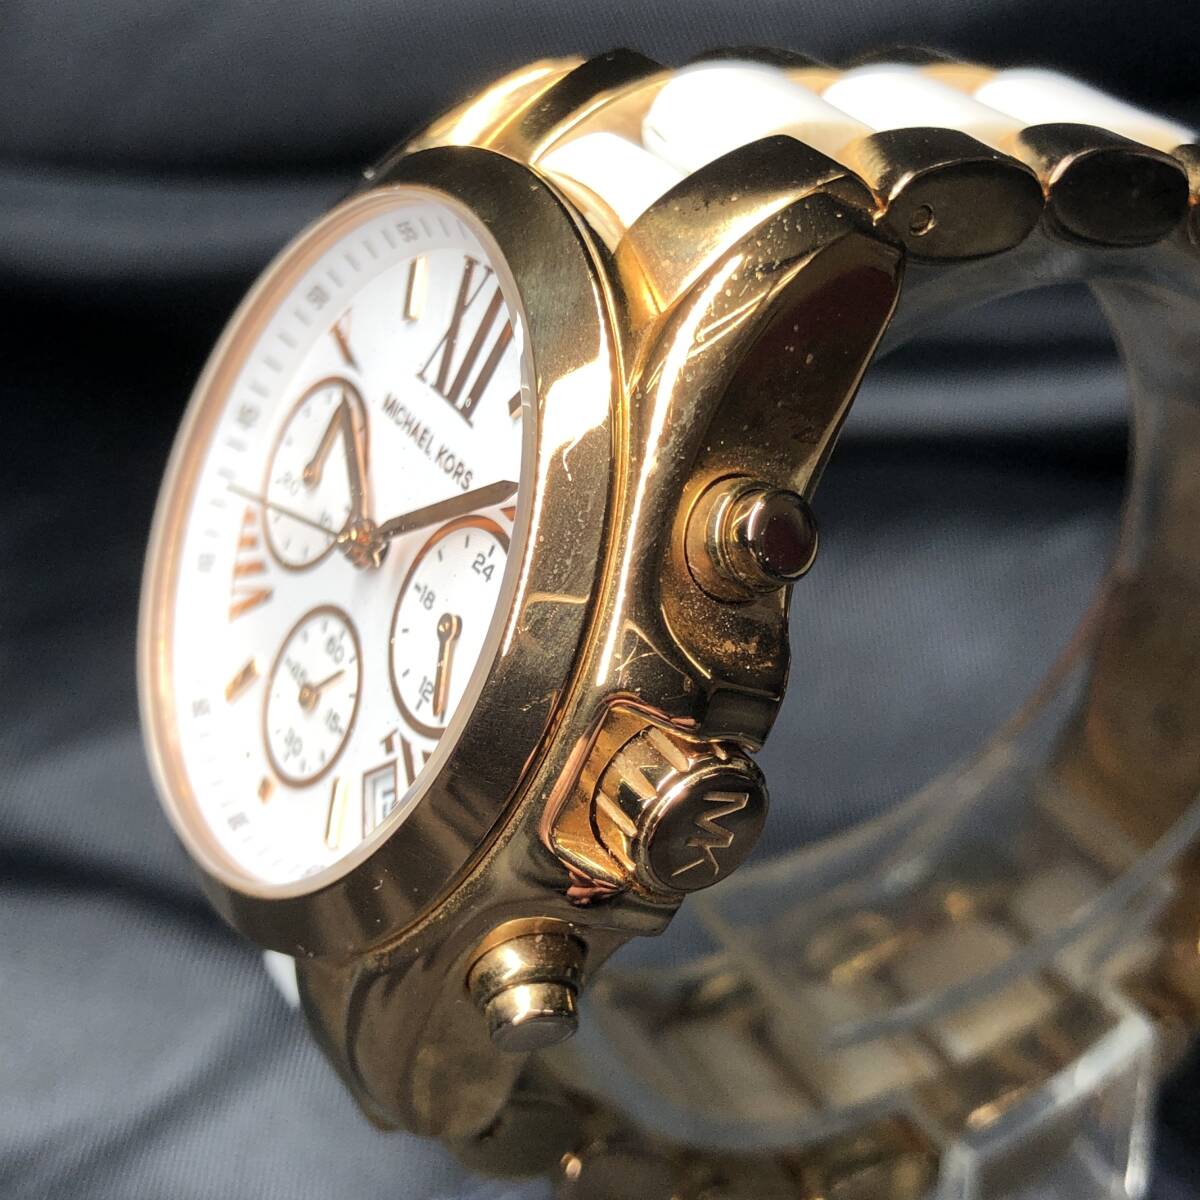 MAICHAEL KORS マイケルコース 腕時計 MK-5907 クロノグラフ デイト レディース ゴールドカラー 3針 24c菊RH _画像4